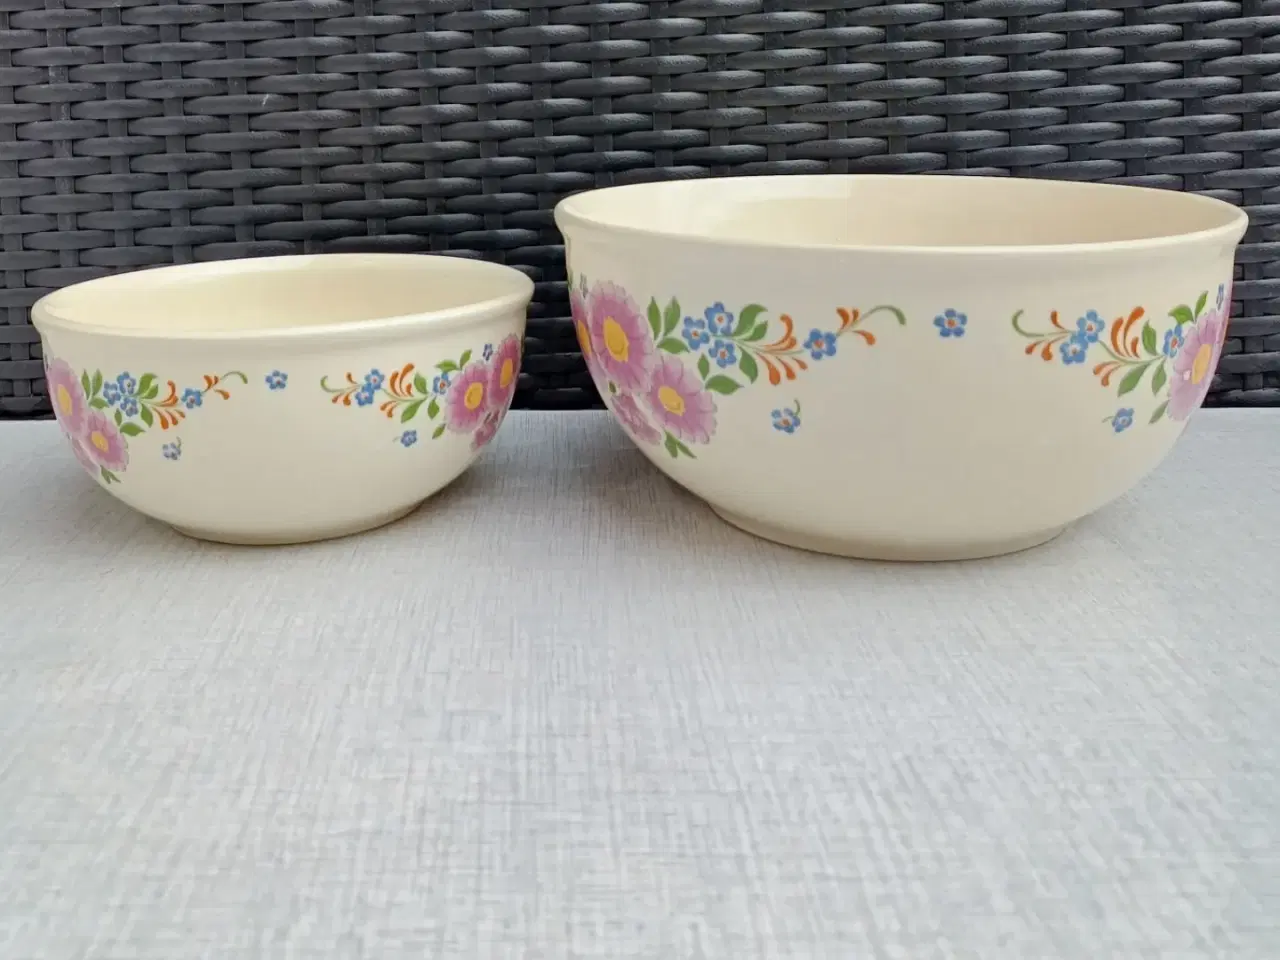 Billede 2 - To porcelæns skåle med blomstermotiv.